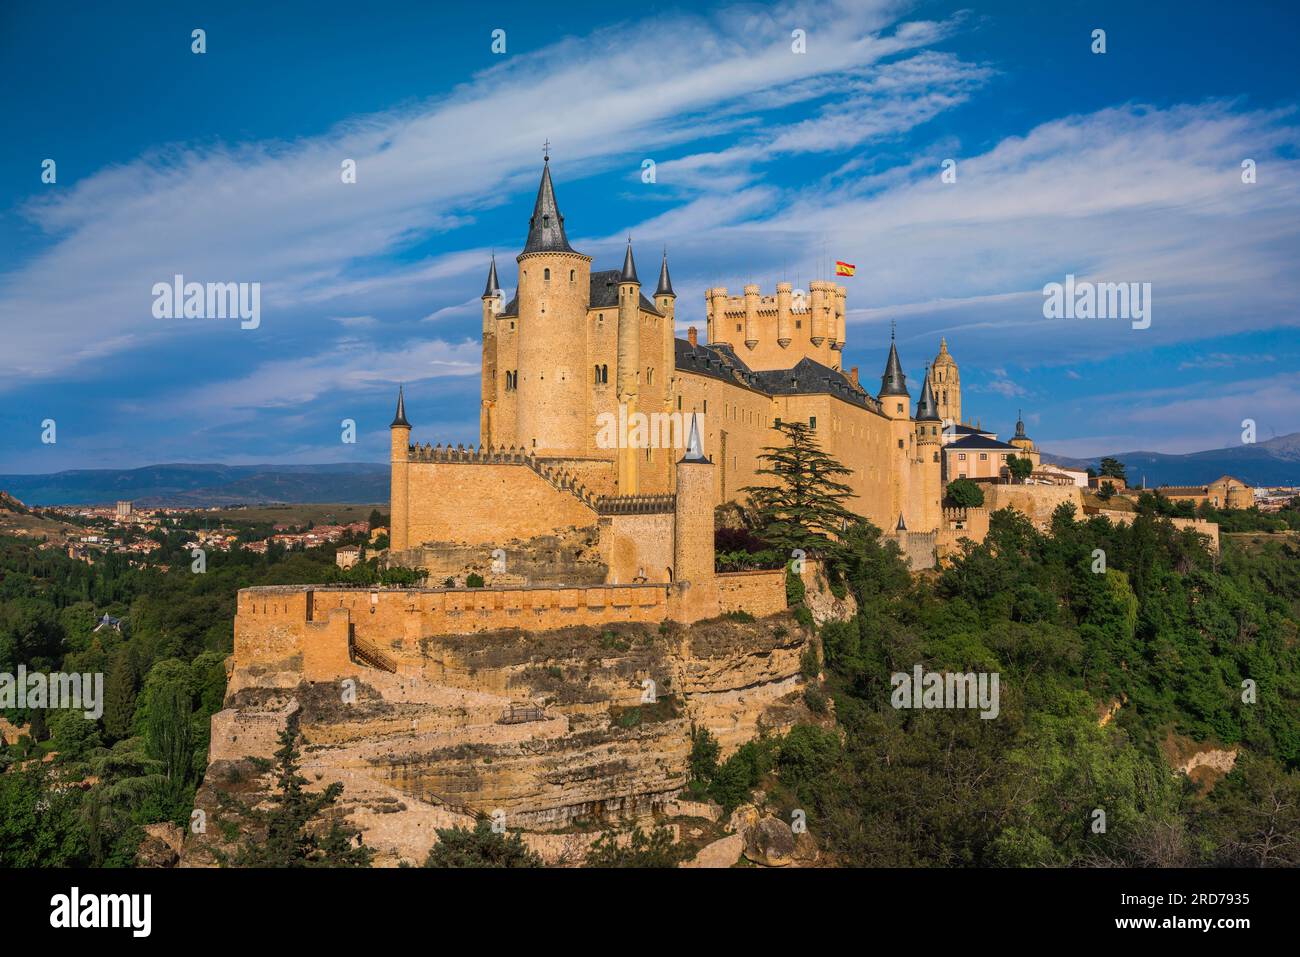 Alcazar Segovia, Blick auf den Alcazar de Segovia, ein spektakuläres Schloss aus dem 15. Jahrhundert, das sich am nordwestlichen Rand der Stadt Segovia, Spanien, befindet Stockfoto